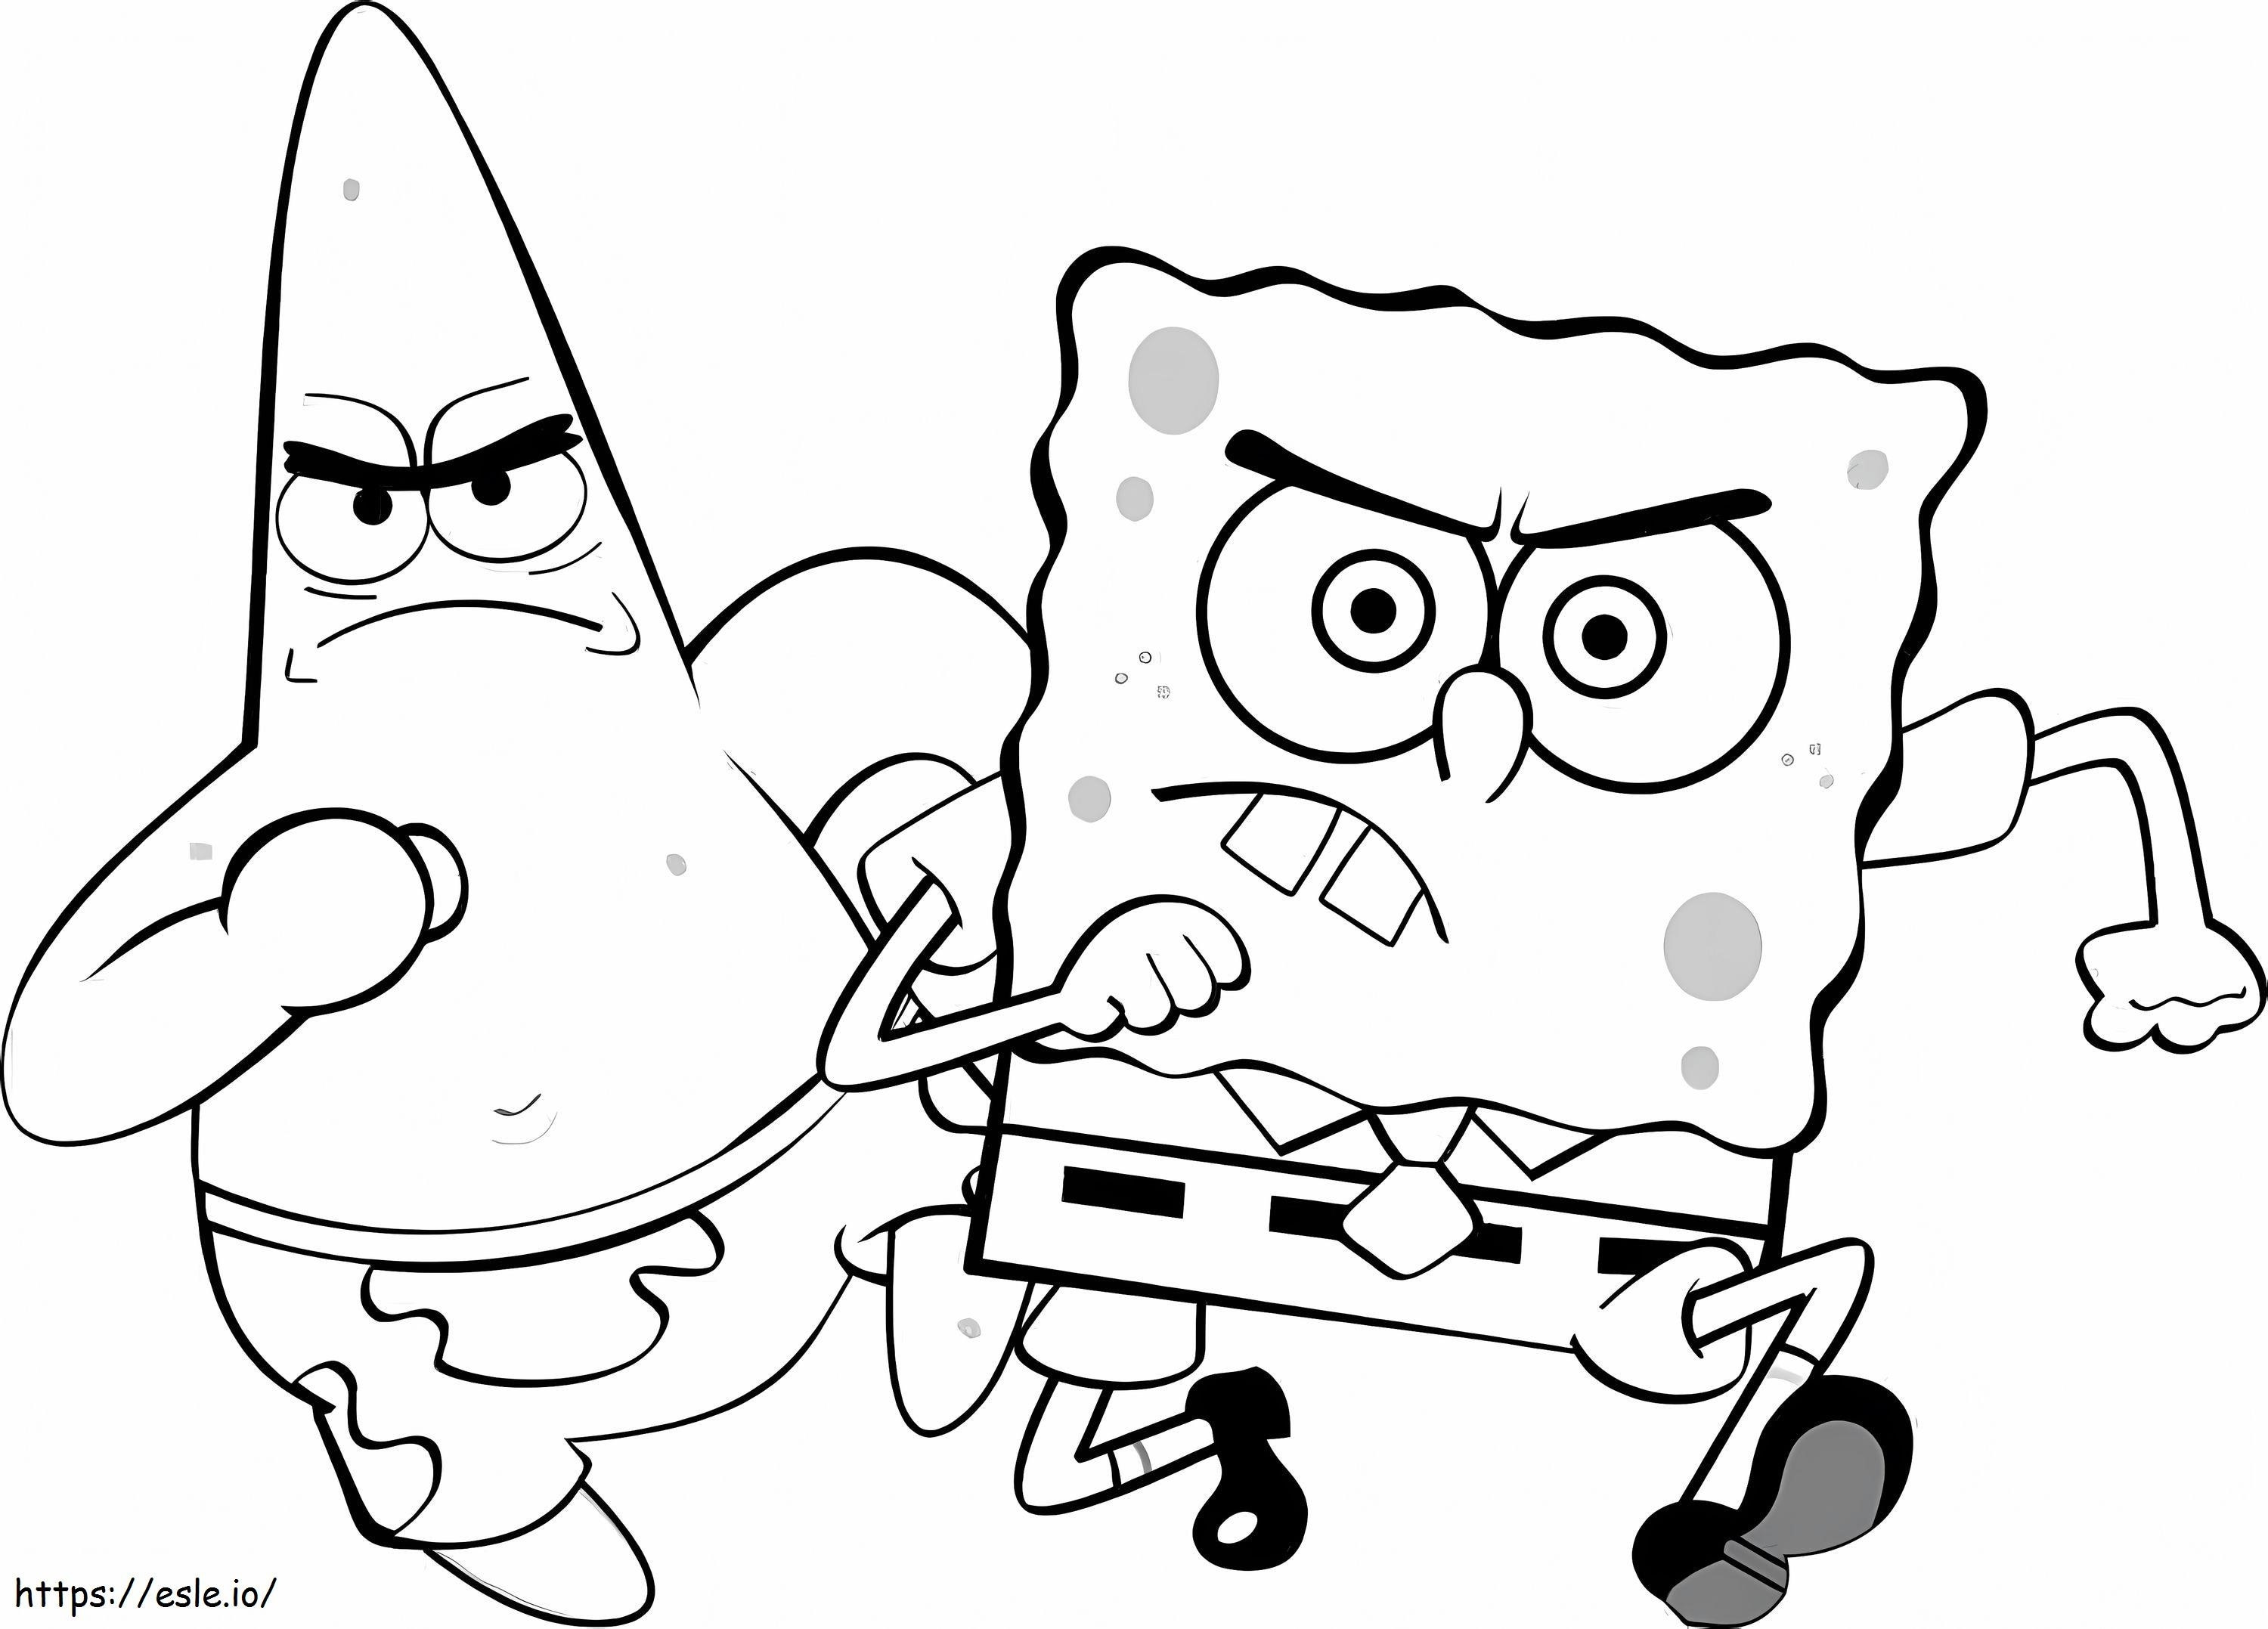 Patrick Star en Spongebob rennen kleurplaat kleurplaat